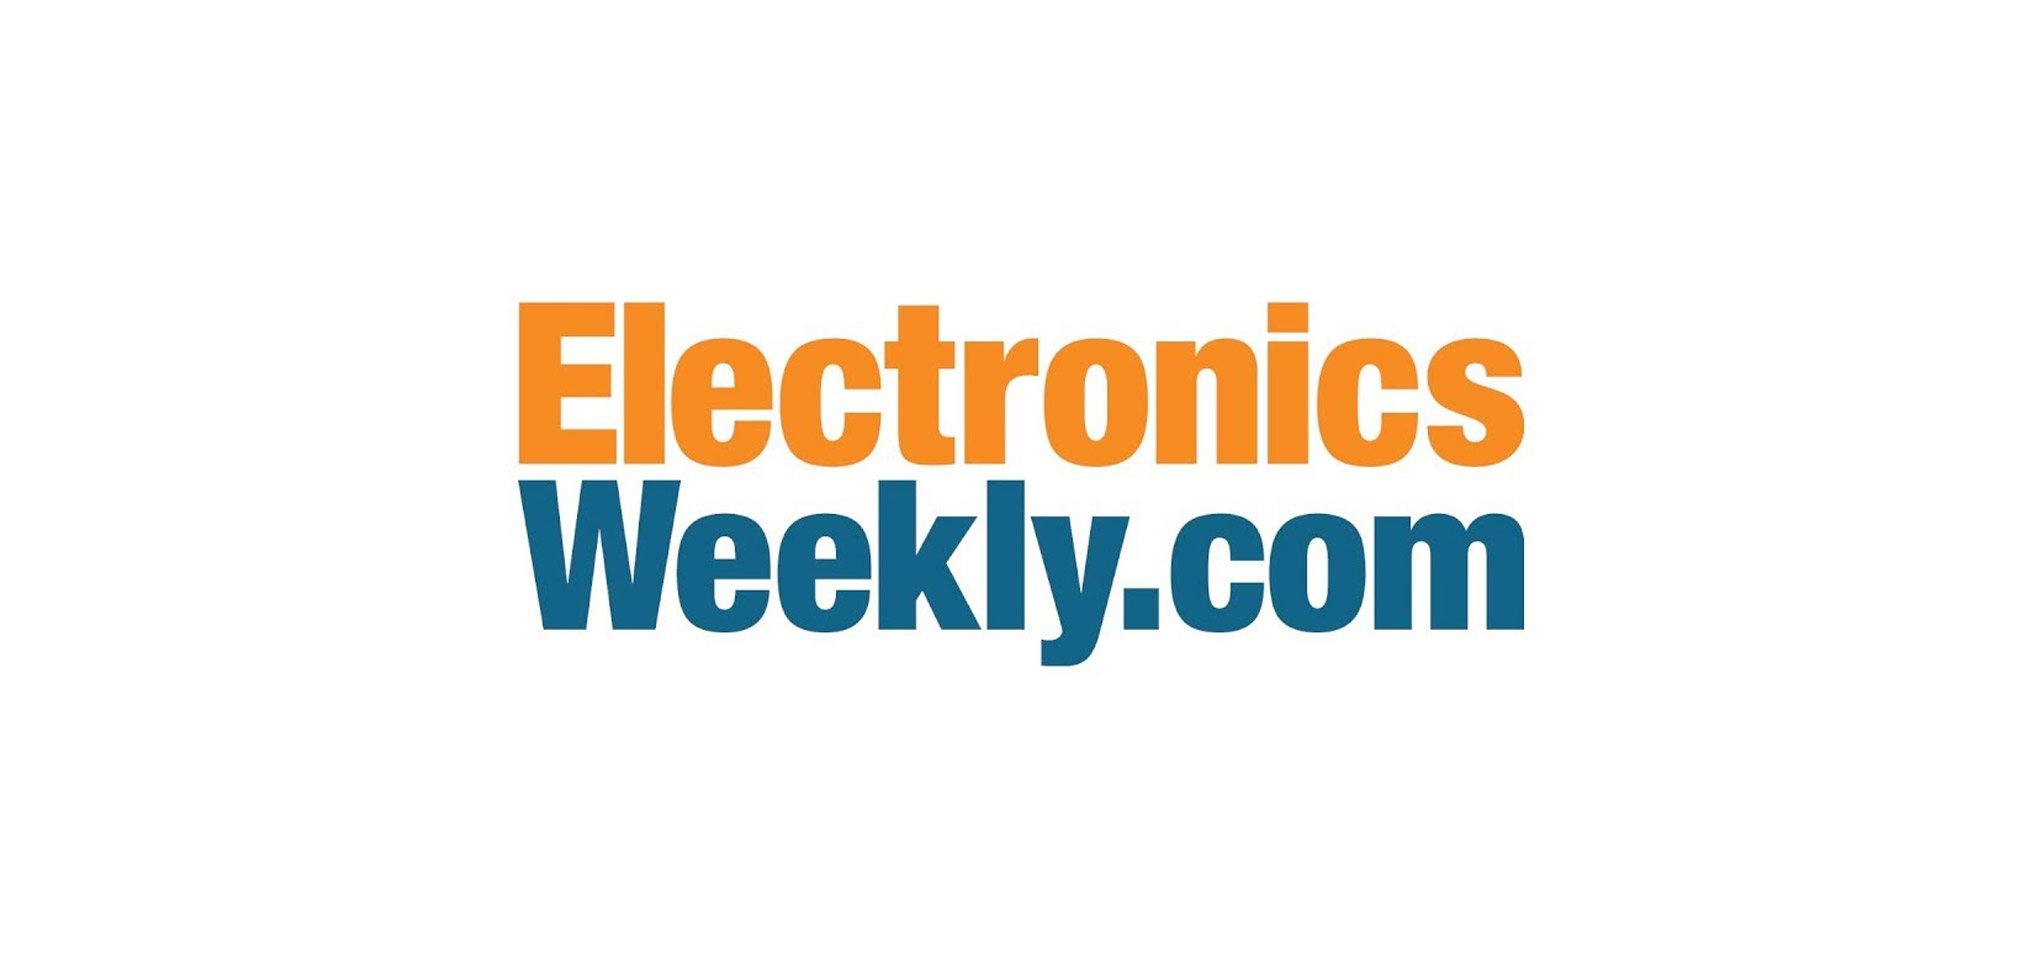 Electronics Weekly Skeleton